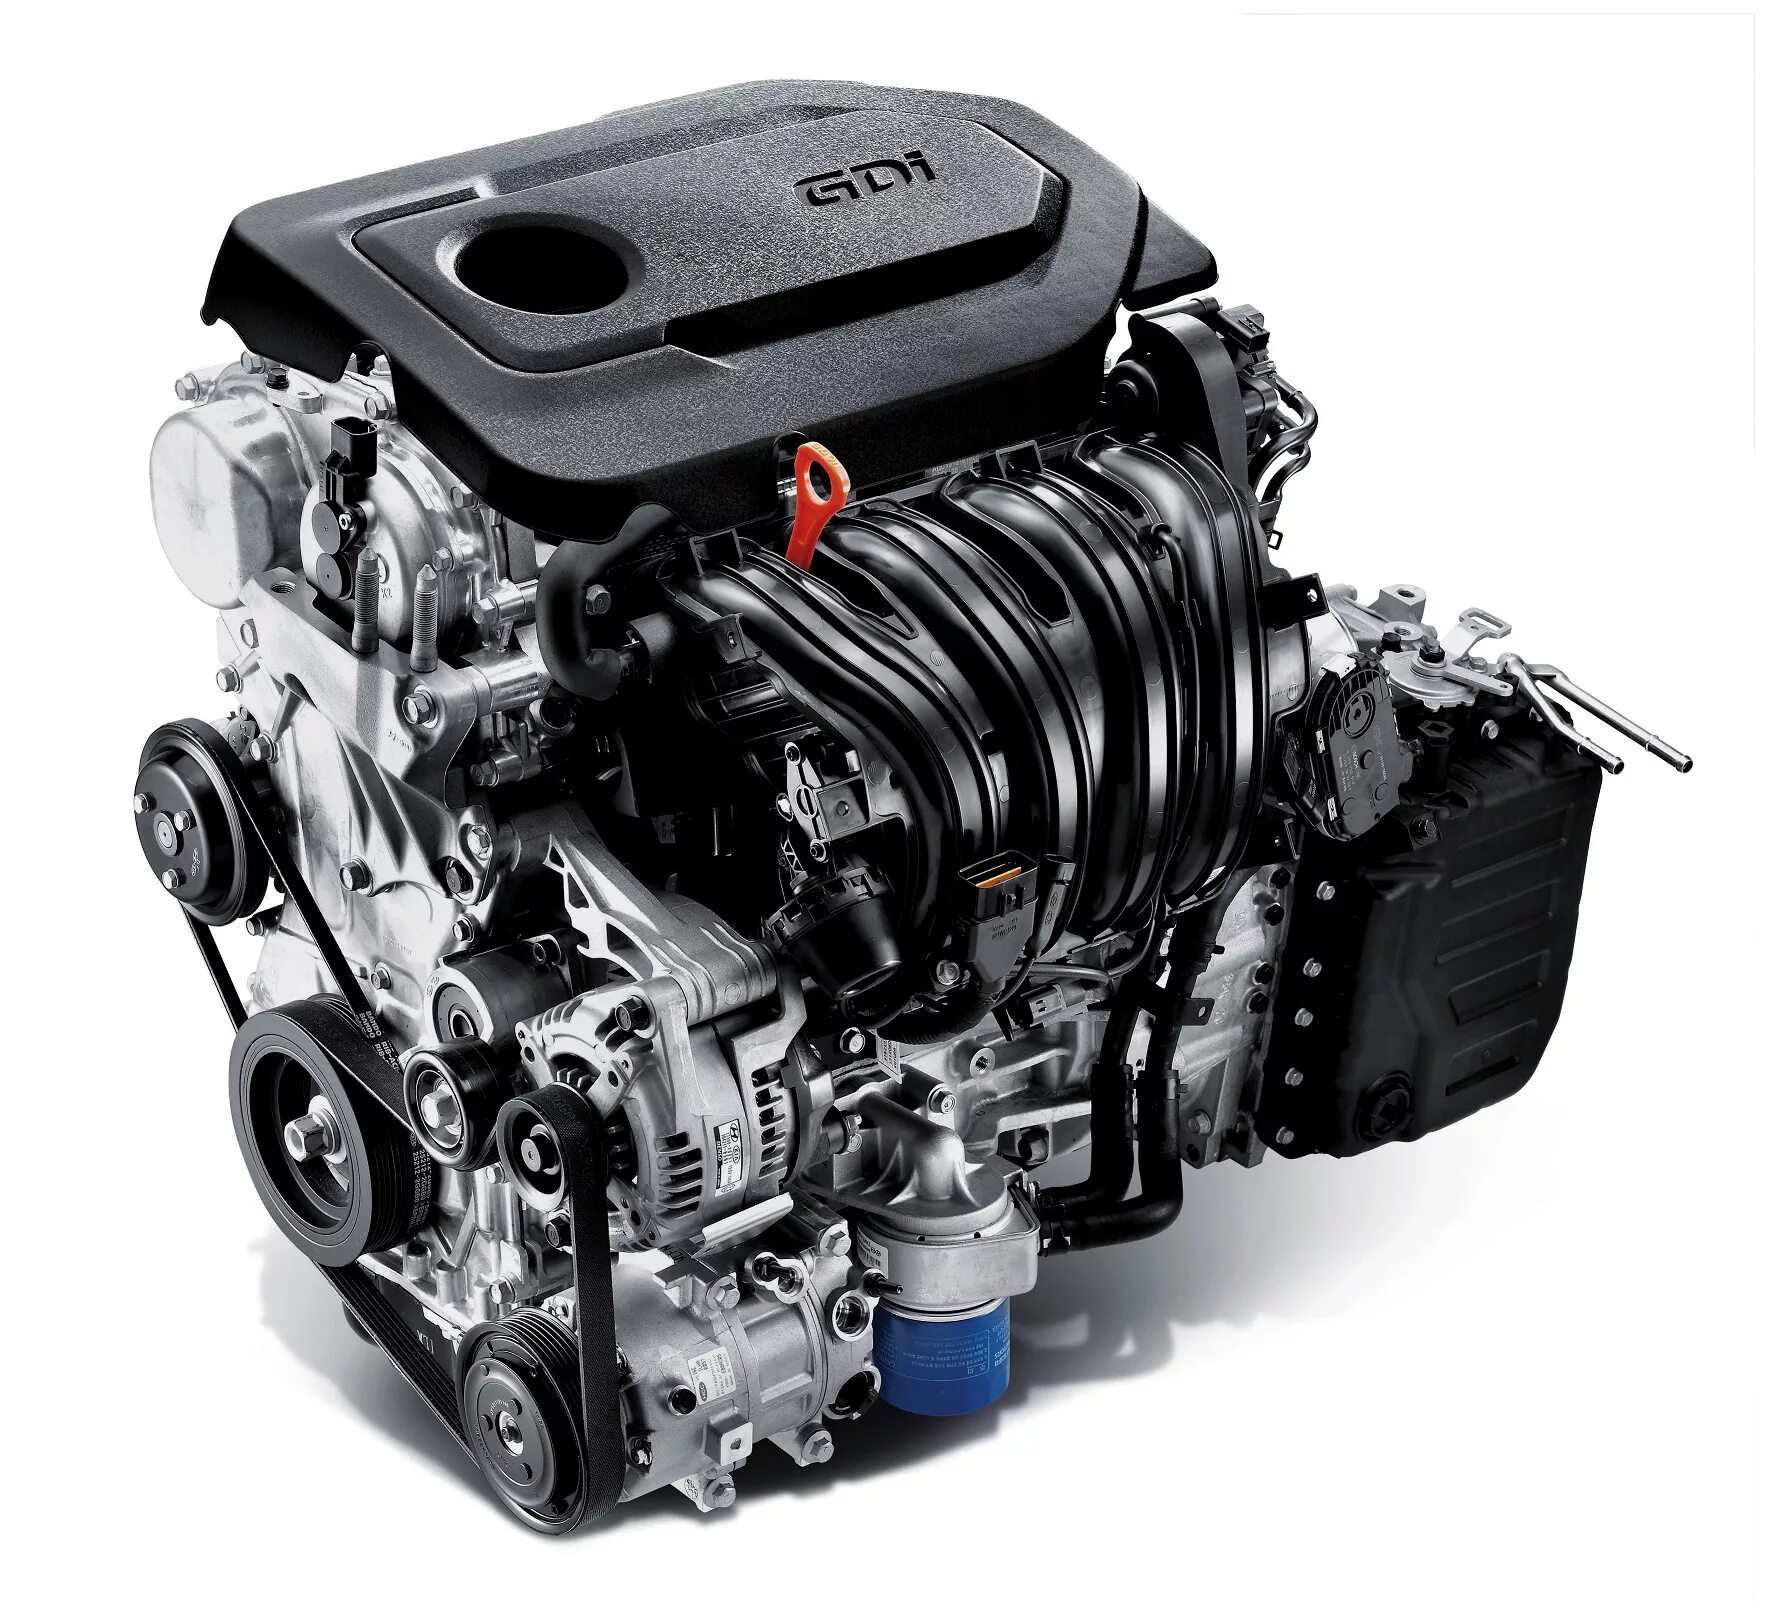 Купить 2 литровый двигатель. Соната 2.4 GDI мотор. Двигатель Киа 2.4 GDI. Hyundai мотор 2.4. Theta II 2.4L GDI (g4kj).